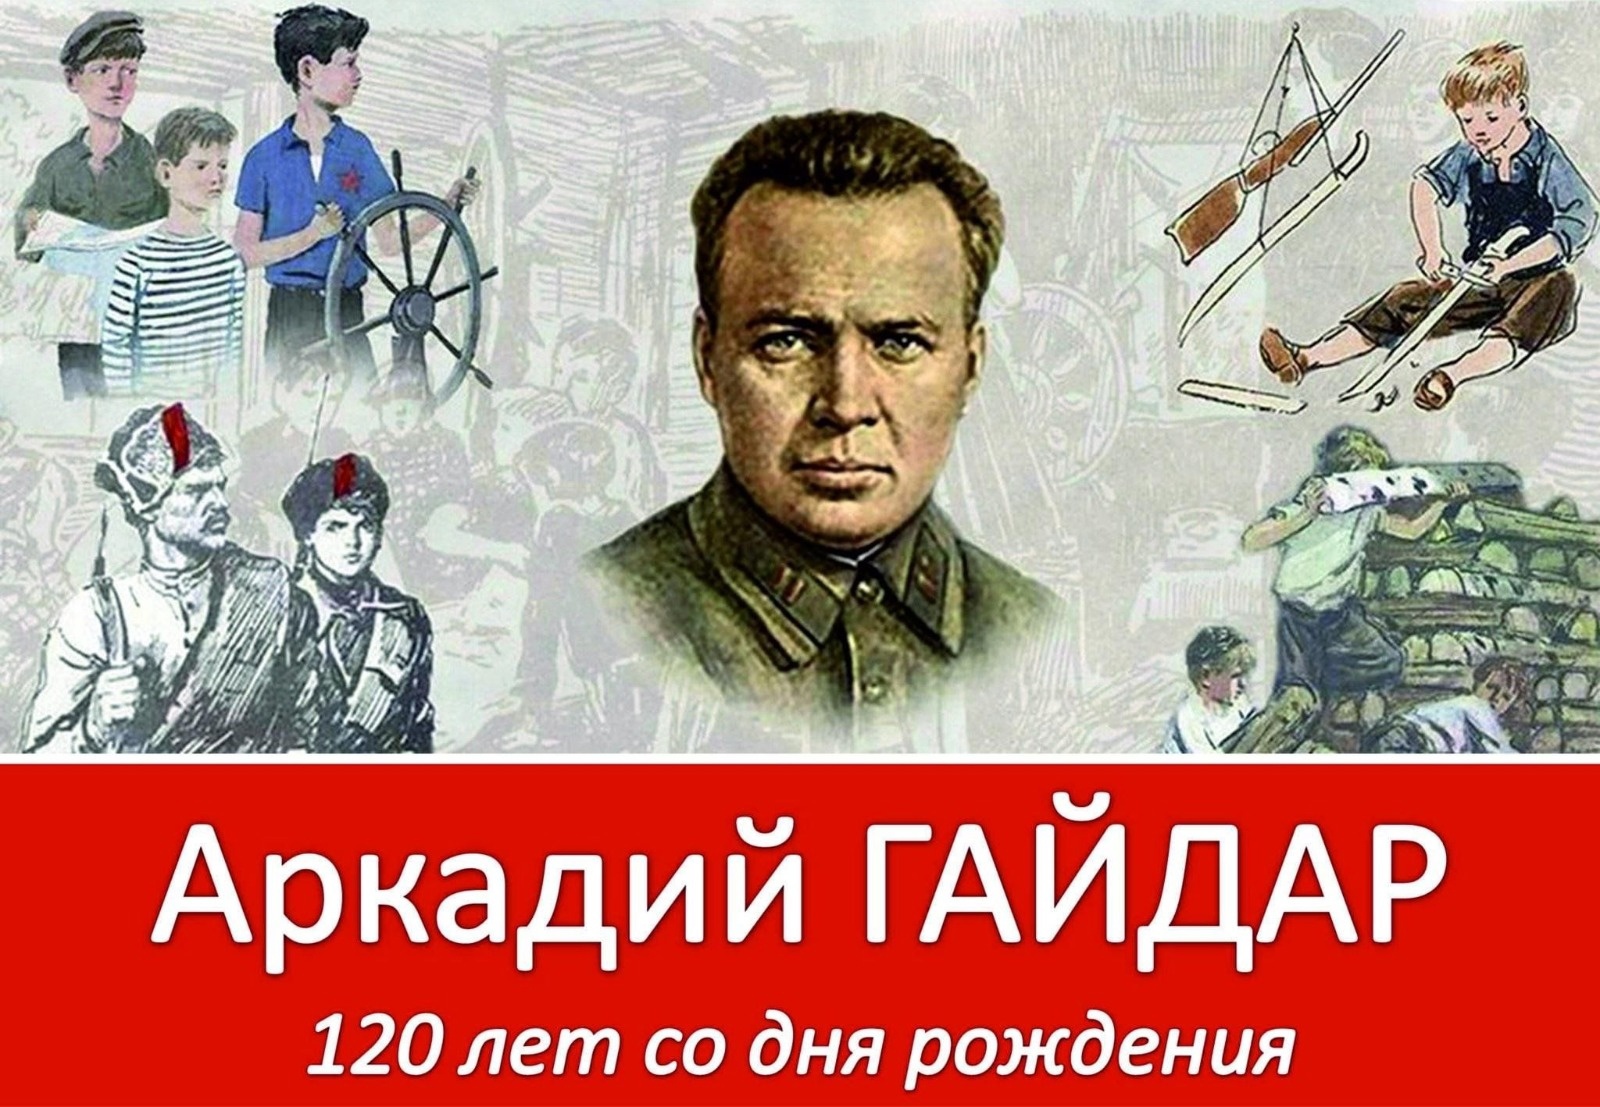 120 лет со дня рождения Аркадия Гайдара.